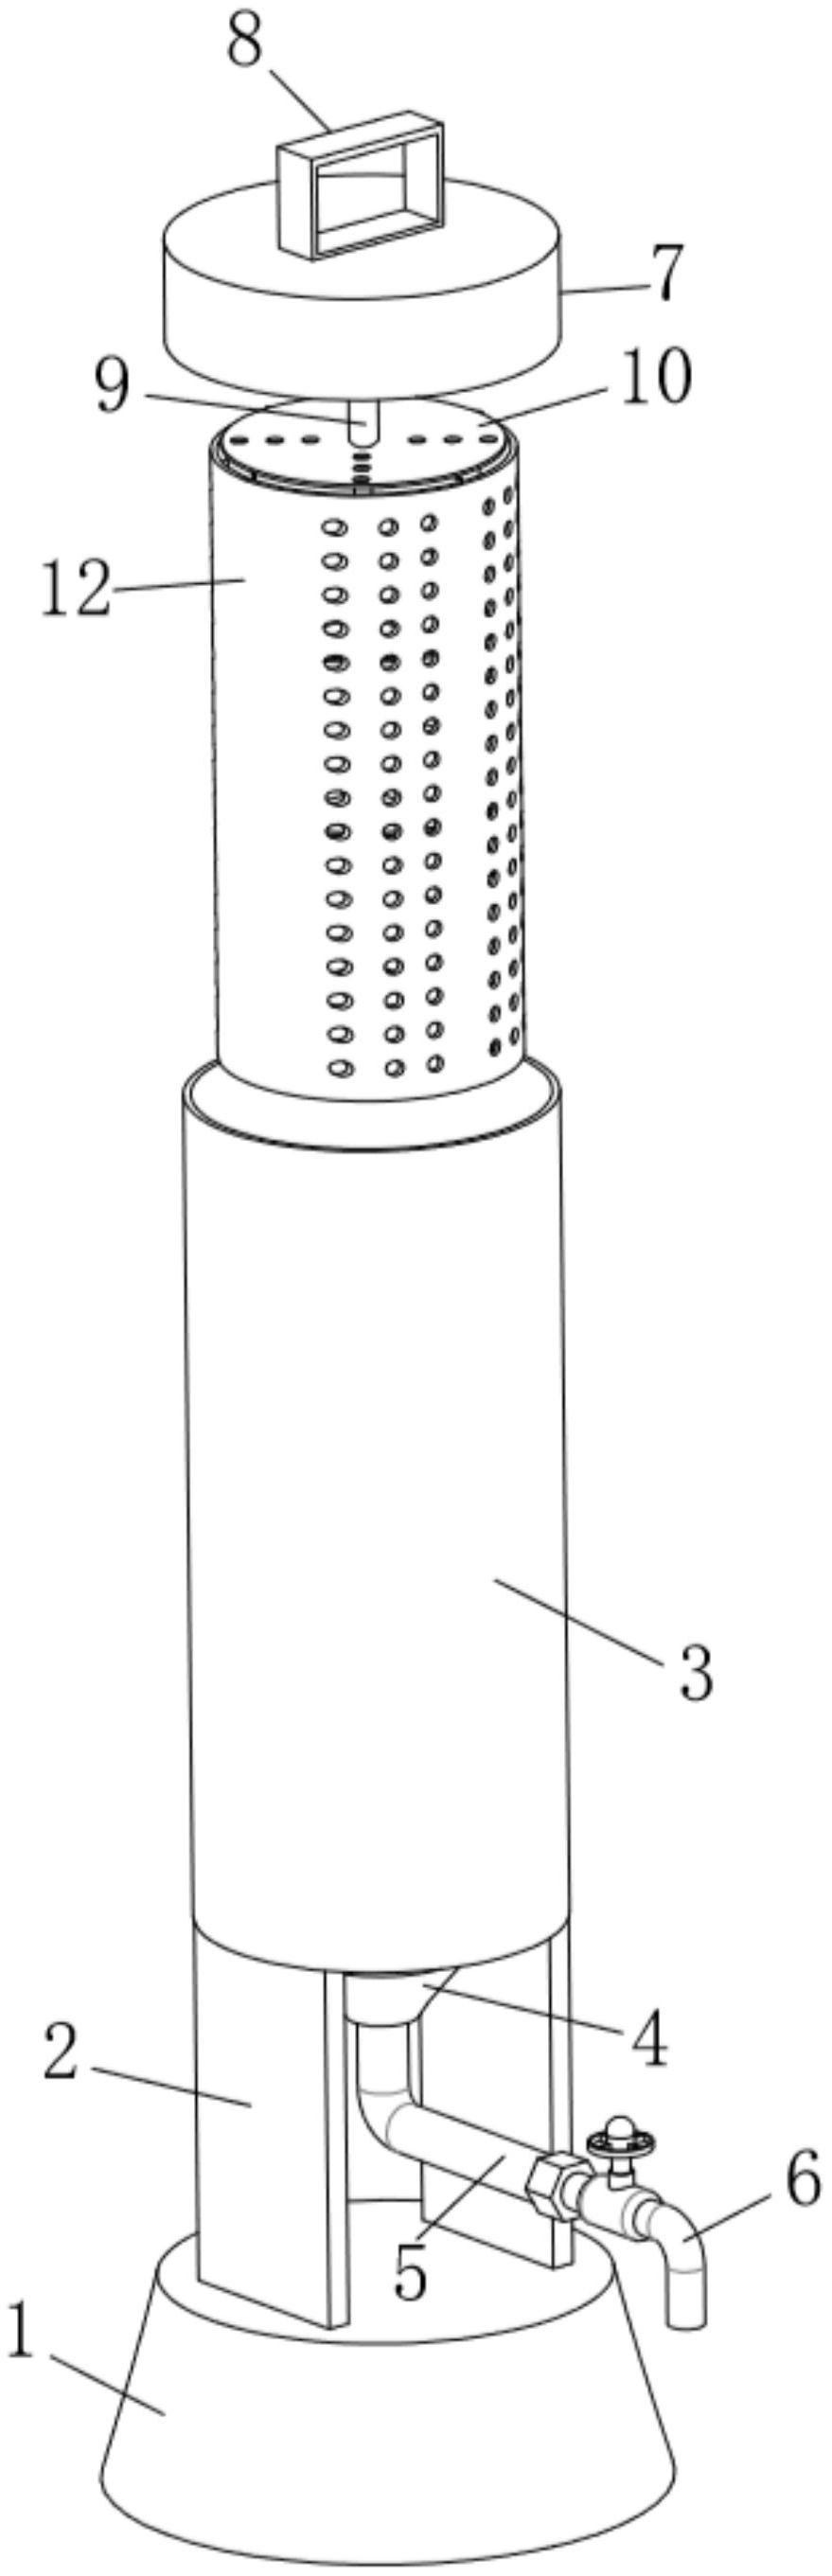 一种麻醉科专用消毒桶专利图